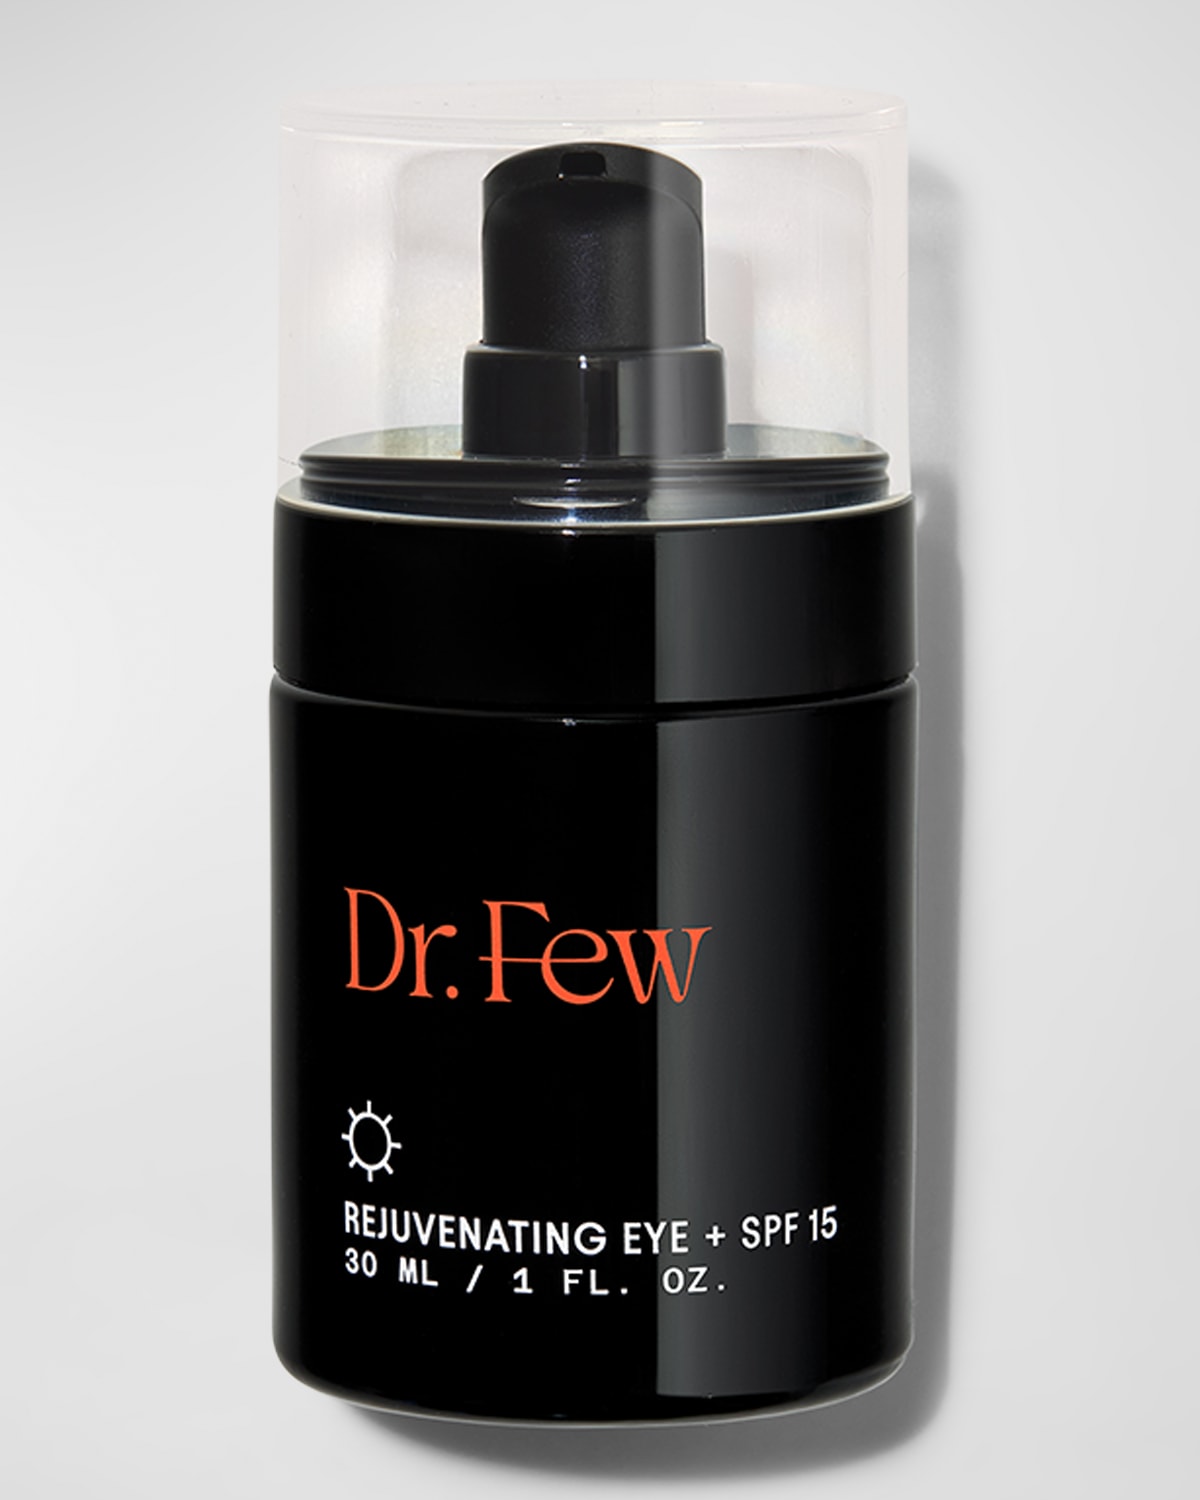 Rejuvenating Eye + SPF 15, 1 oz.